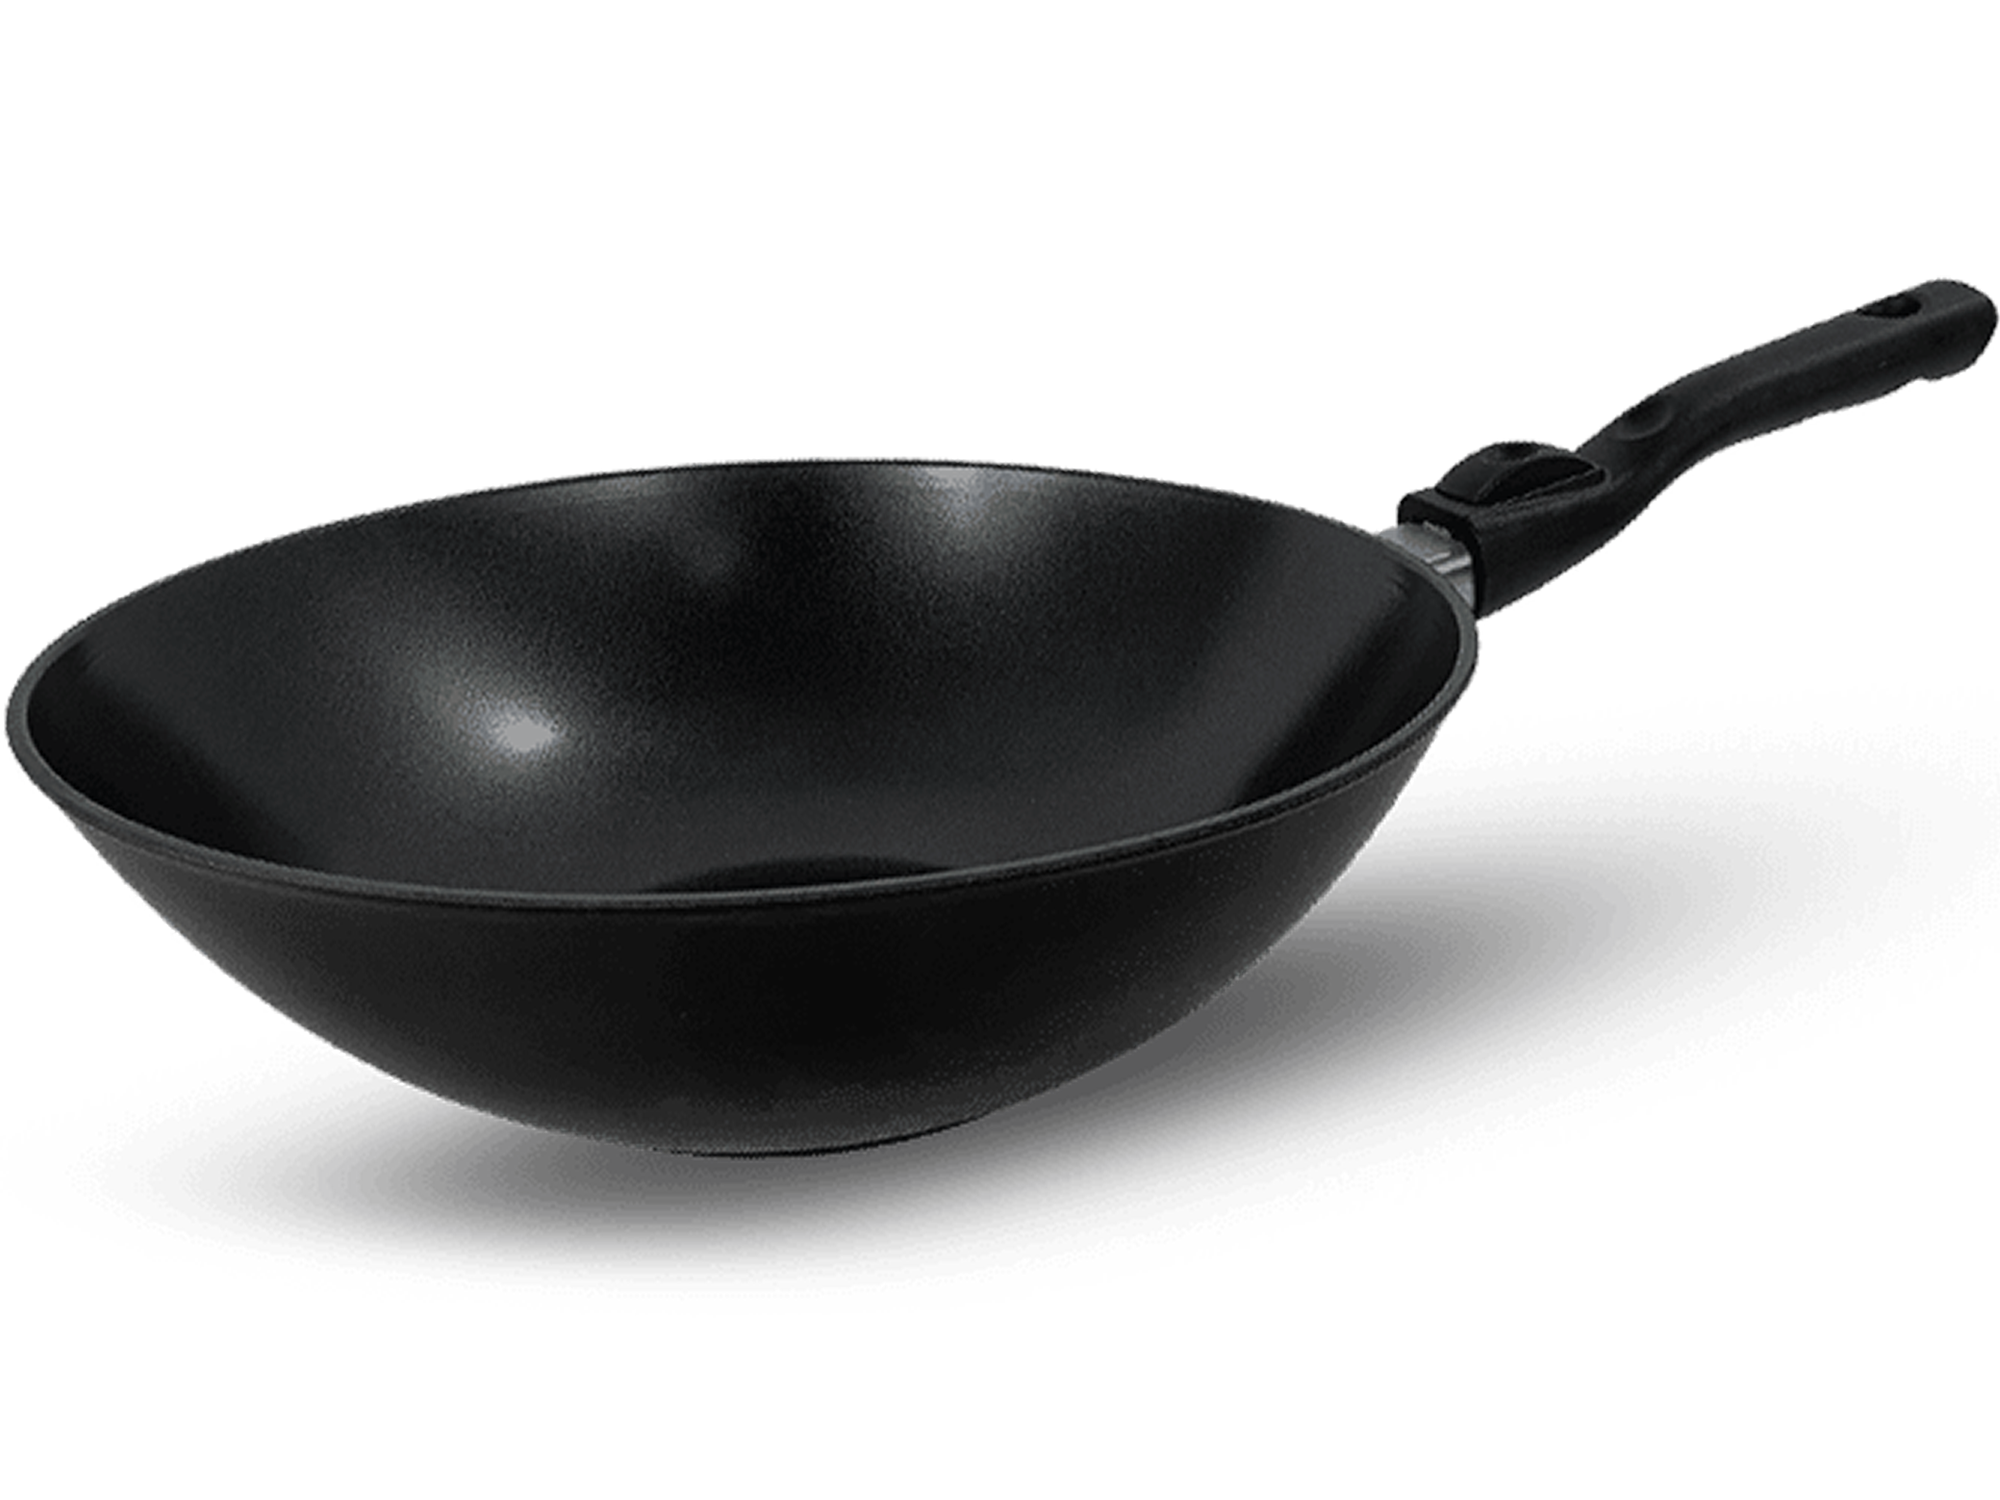 profi pfannen, hochwertige pfannen, wokpfanne kitchenline black 3 uai